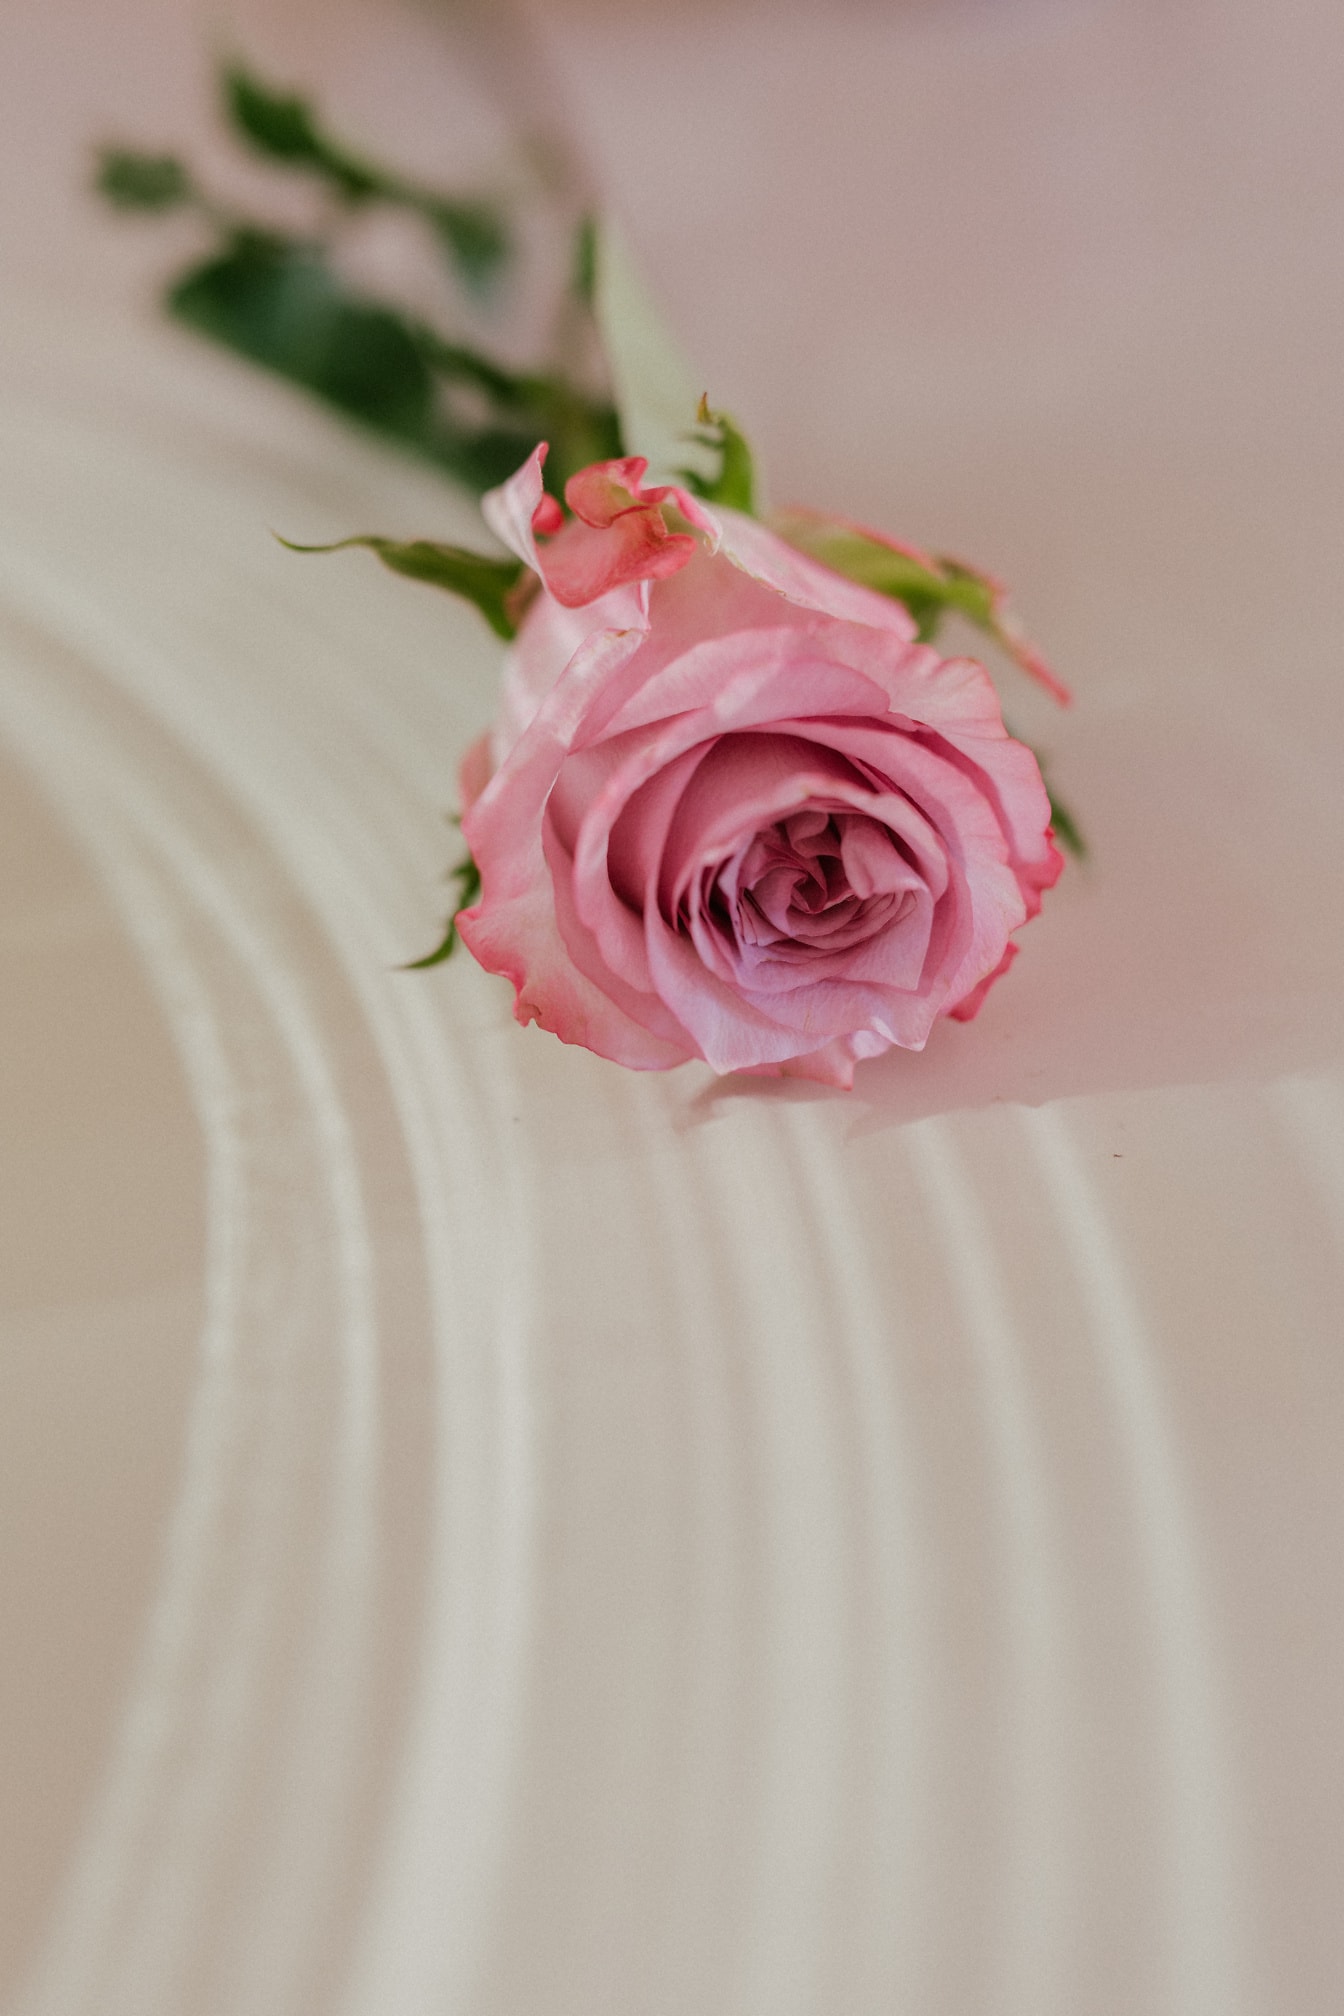 Różowawa róża na białej powierzchni zdjęcie z bliska